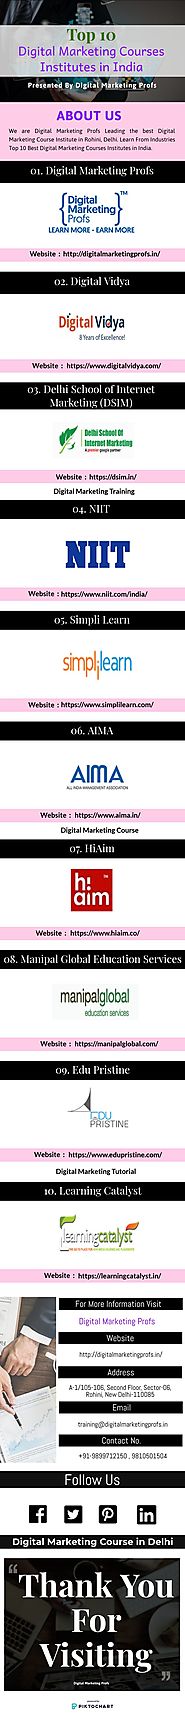 Digital Marketing Courses Institutes in India - Infographic